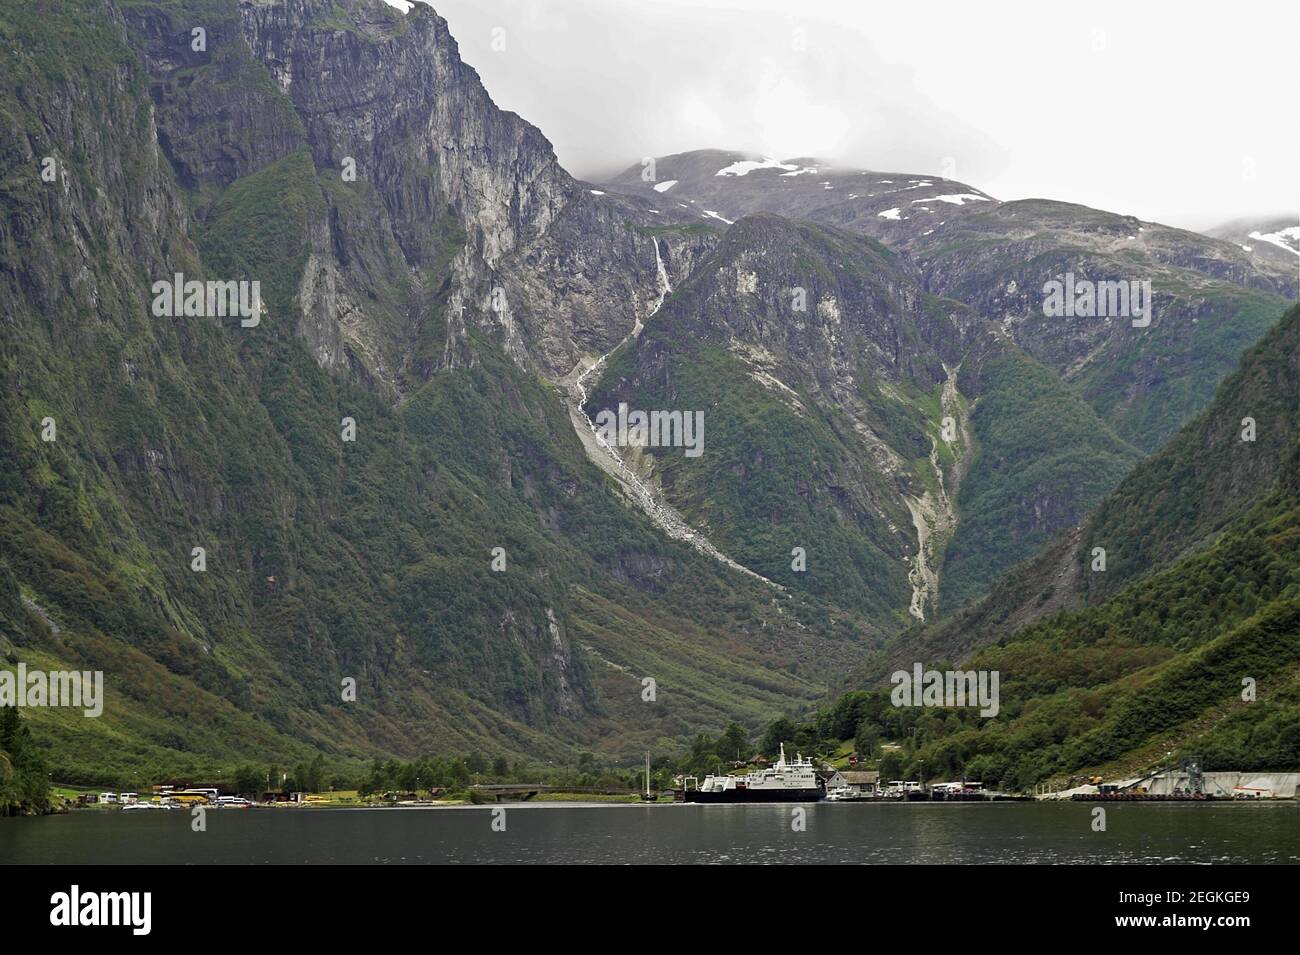 Nærøyfjorden, Norvège, Norwegen; UN paysage typique de fjord norvégien. Typisch norwegische Fjordlandschaft. Pentes abruptes vertes menant au fjord Banque D'Images